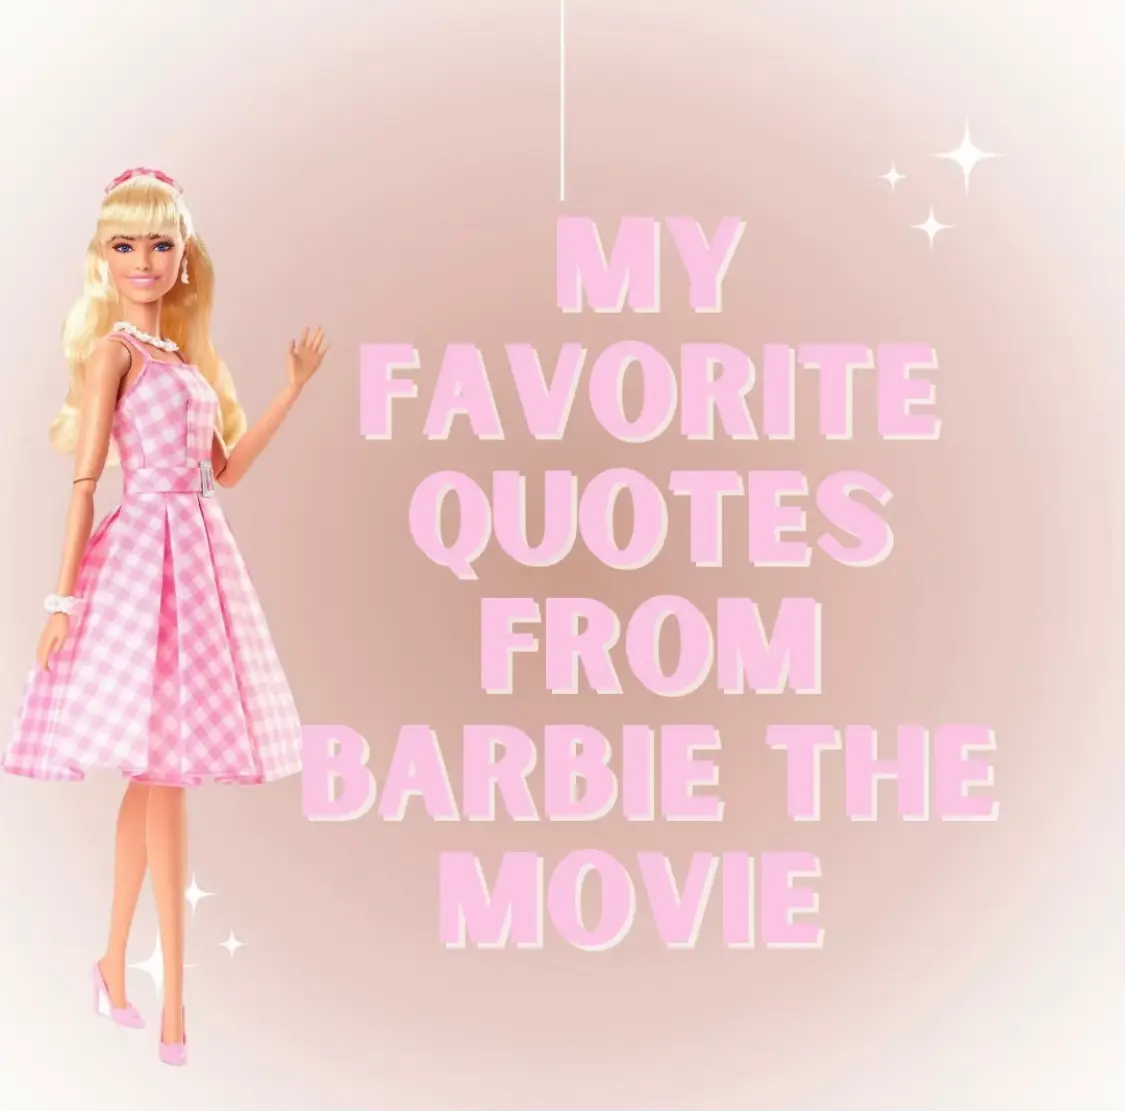 Lemon Dolls: My Favorite Barbie Find (pun intended)